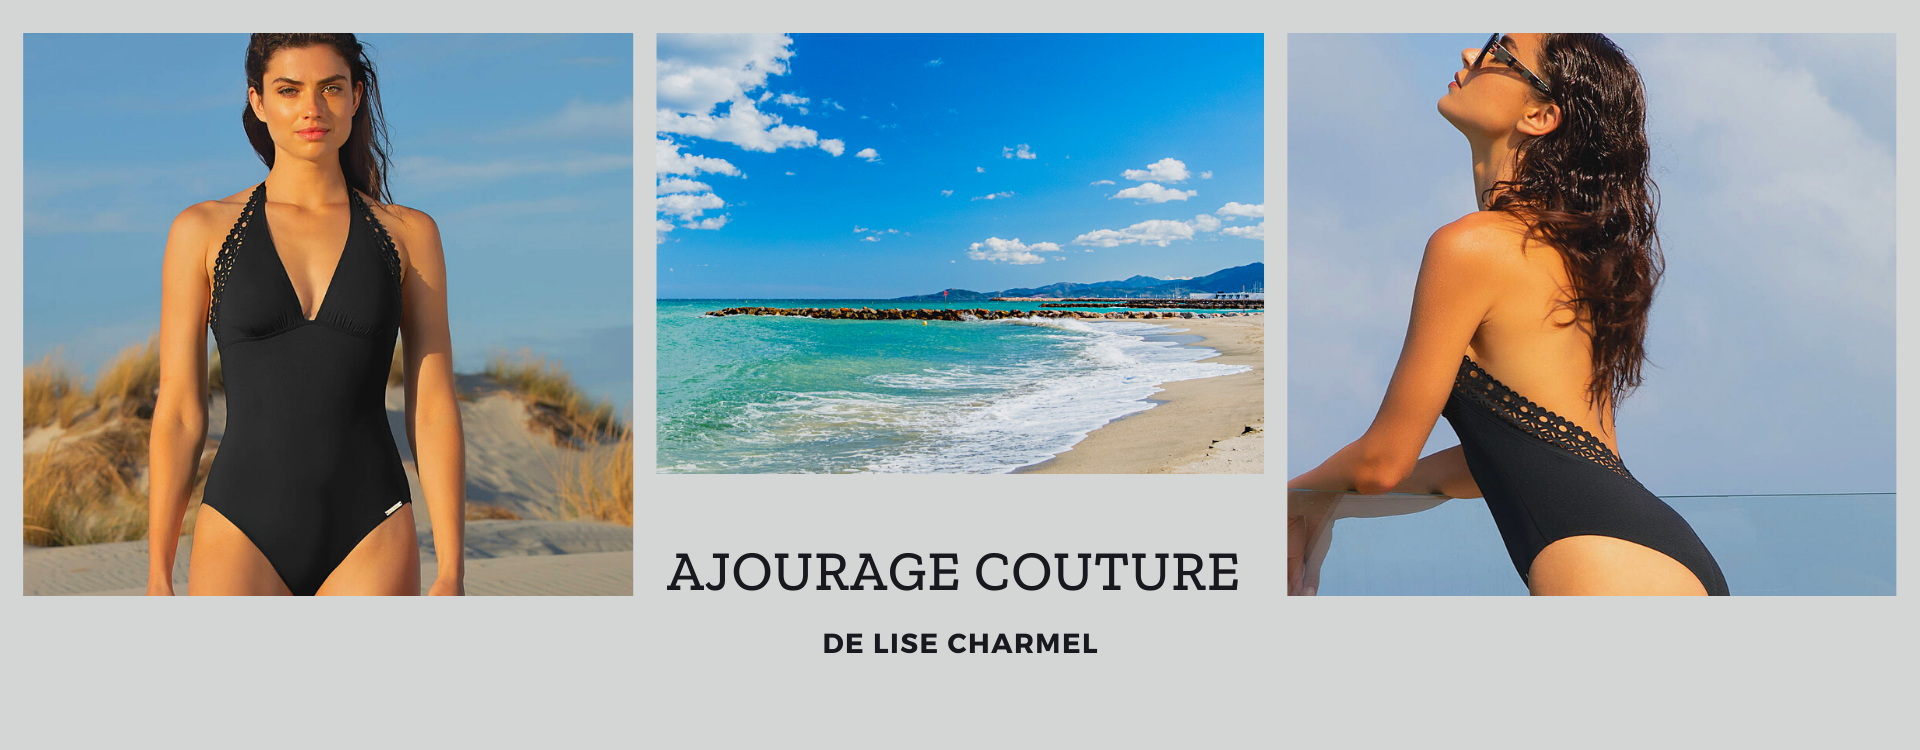 La collection bain Ajourage Couture de la marque Lise Charmel.